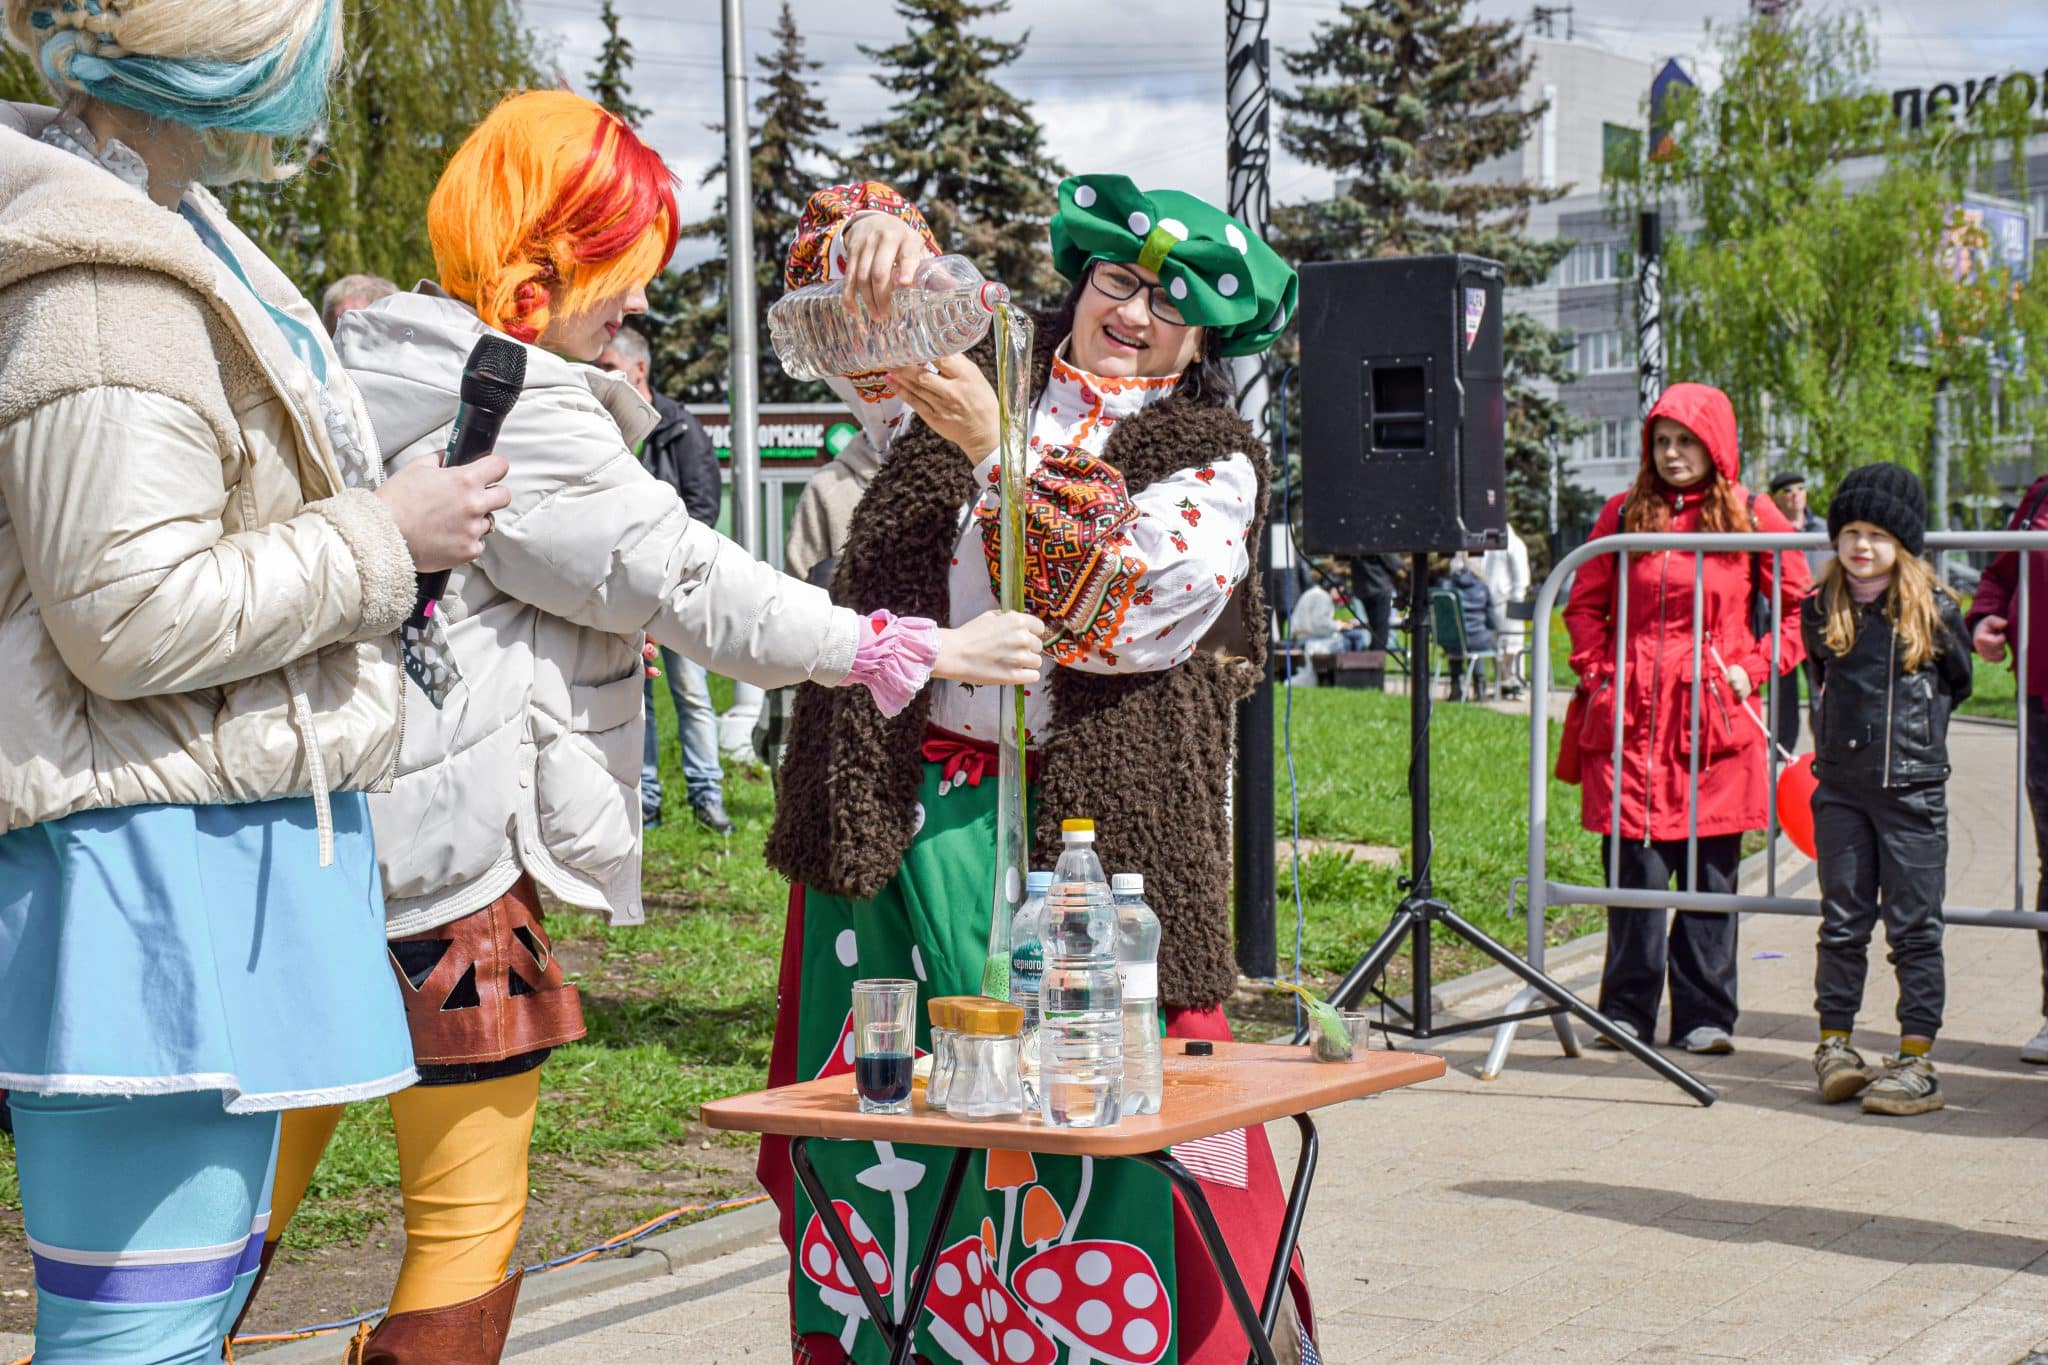 Подарки, развлечения и шоу-программа: в Костроме с размахом открыли парковый сезон